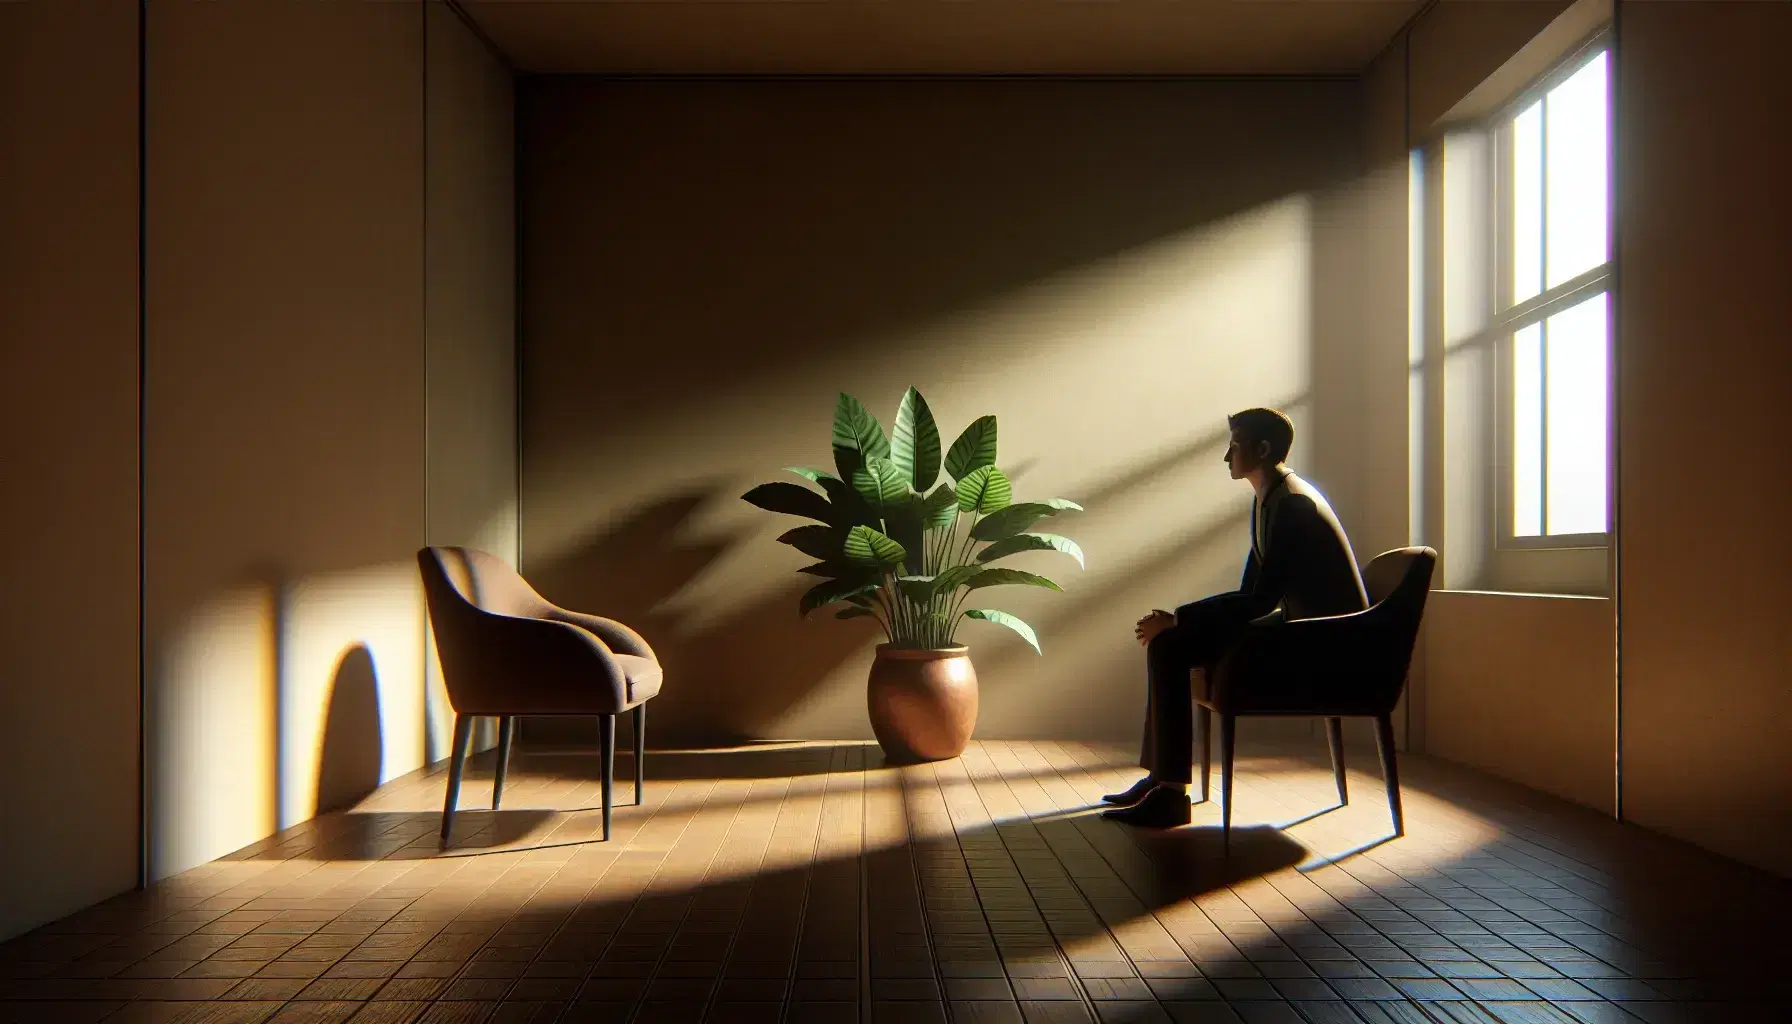 Escena de entrevista con luz natural, una persona en traje sentada frente a silla vacía, planta verde al fondo en ambiente tranquilo y profesional.